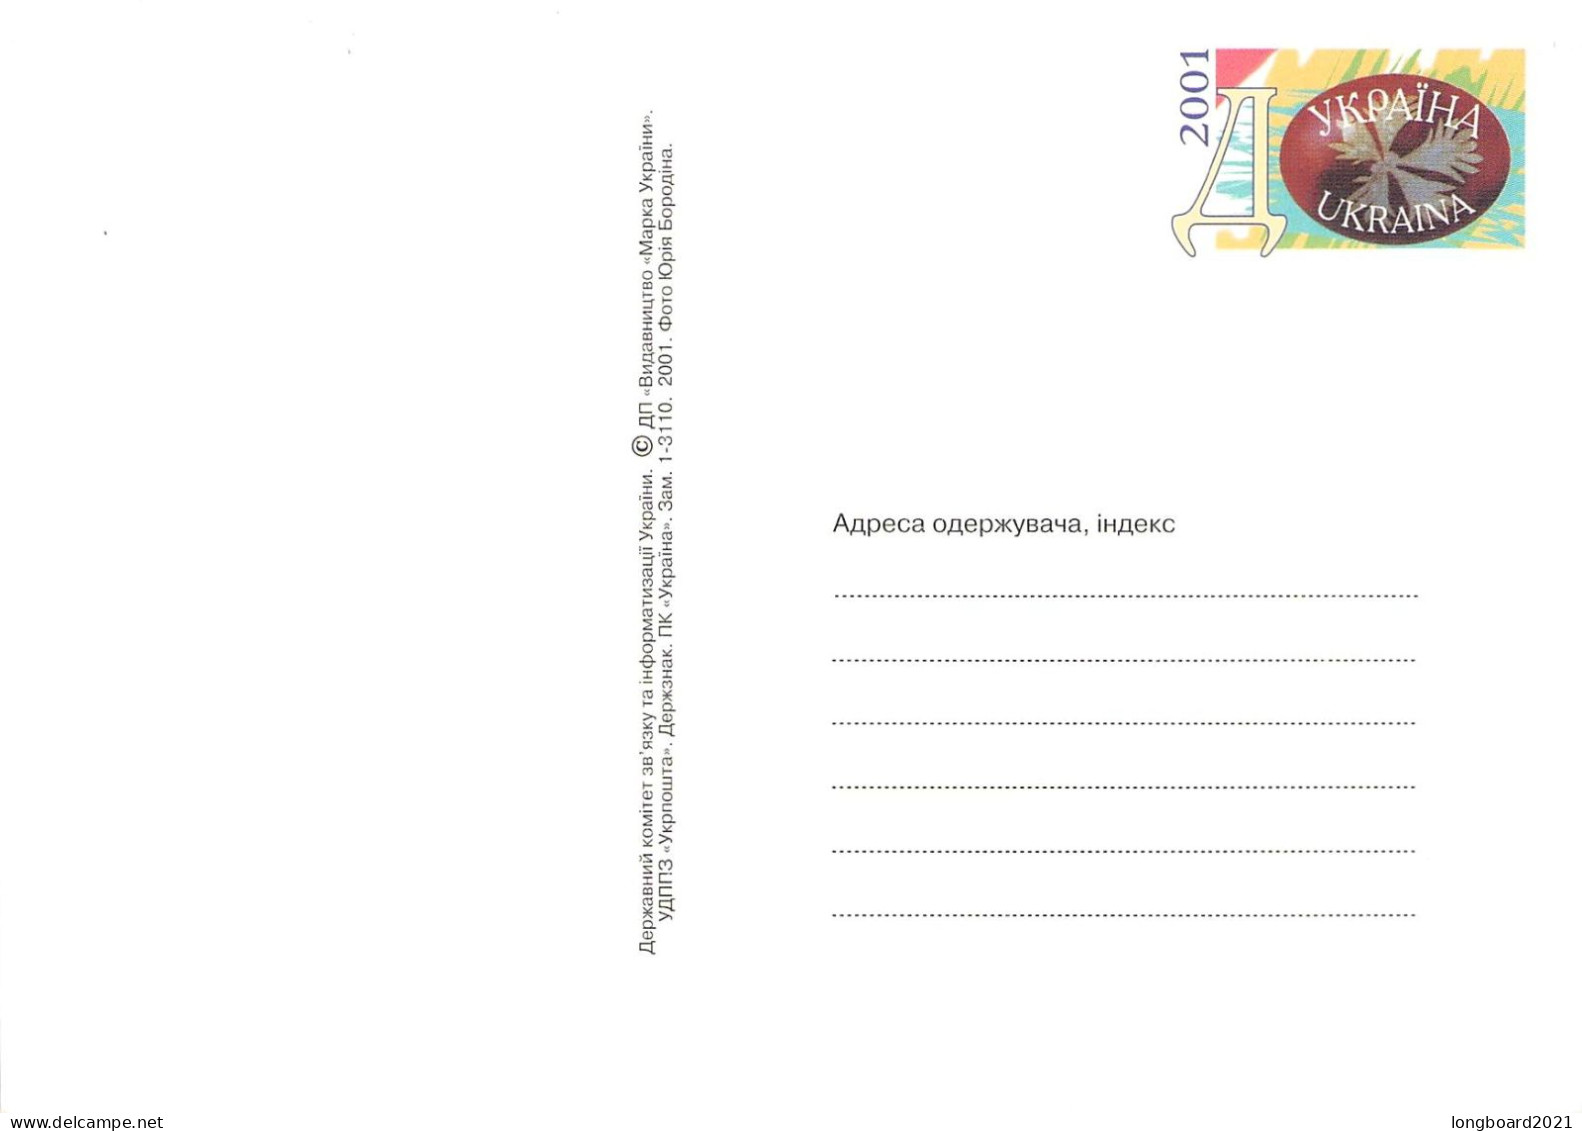 UKRAINE - 2 POSTCARDS 19.3.2001 Mi PSo 26-30 ** / *515 - Ucrania